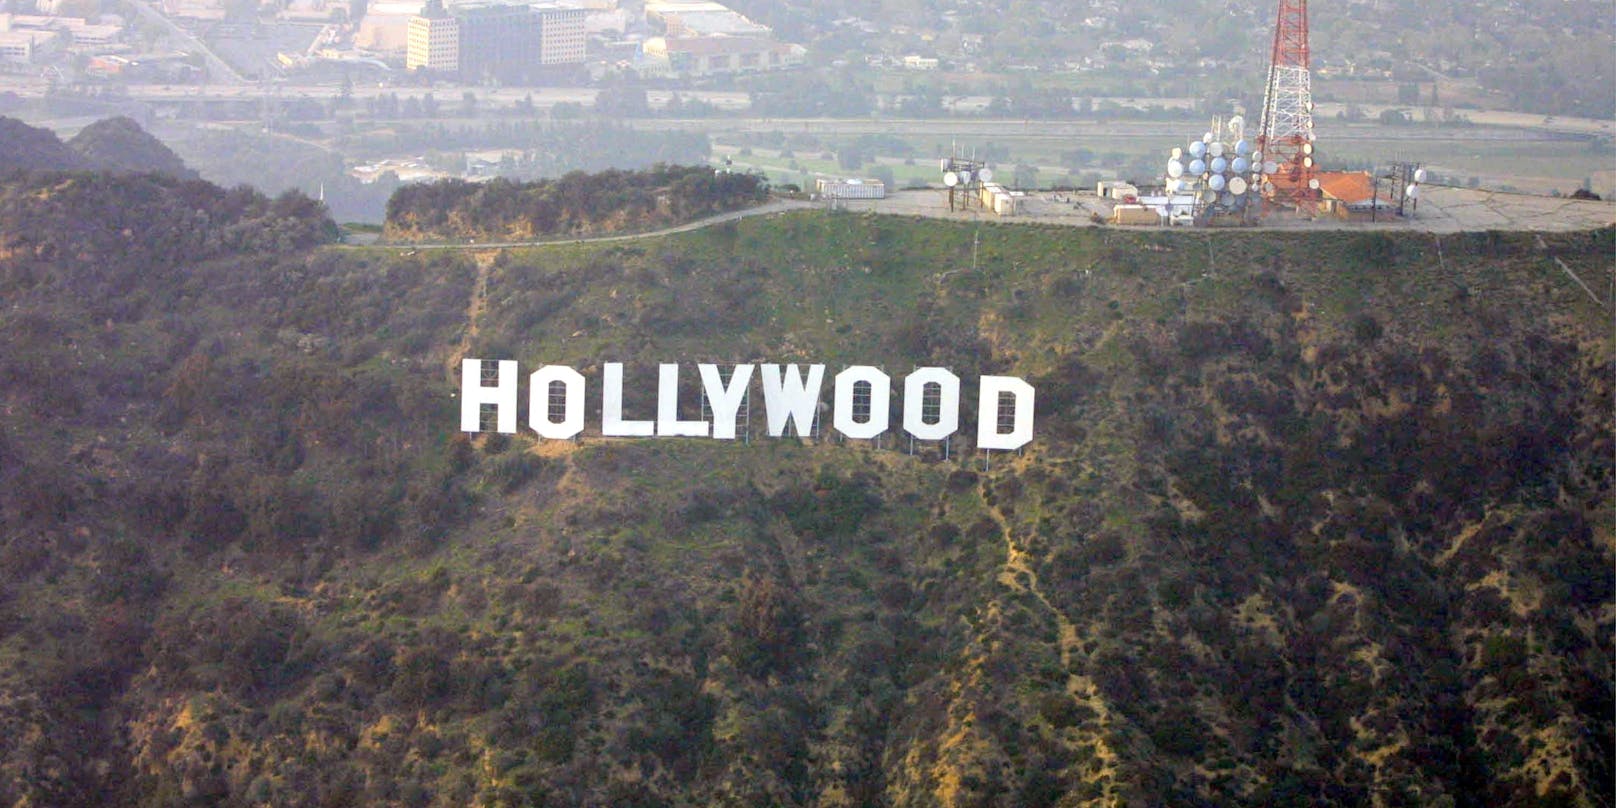 Das Hollywood-Schild